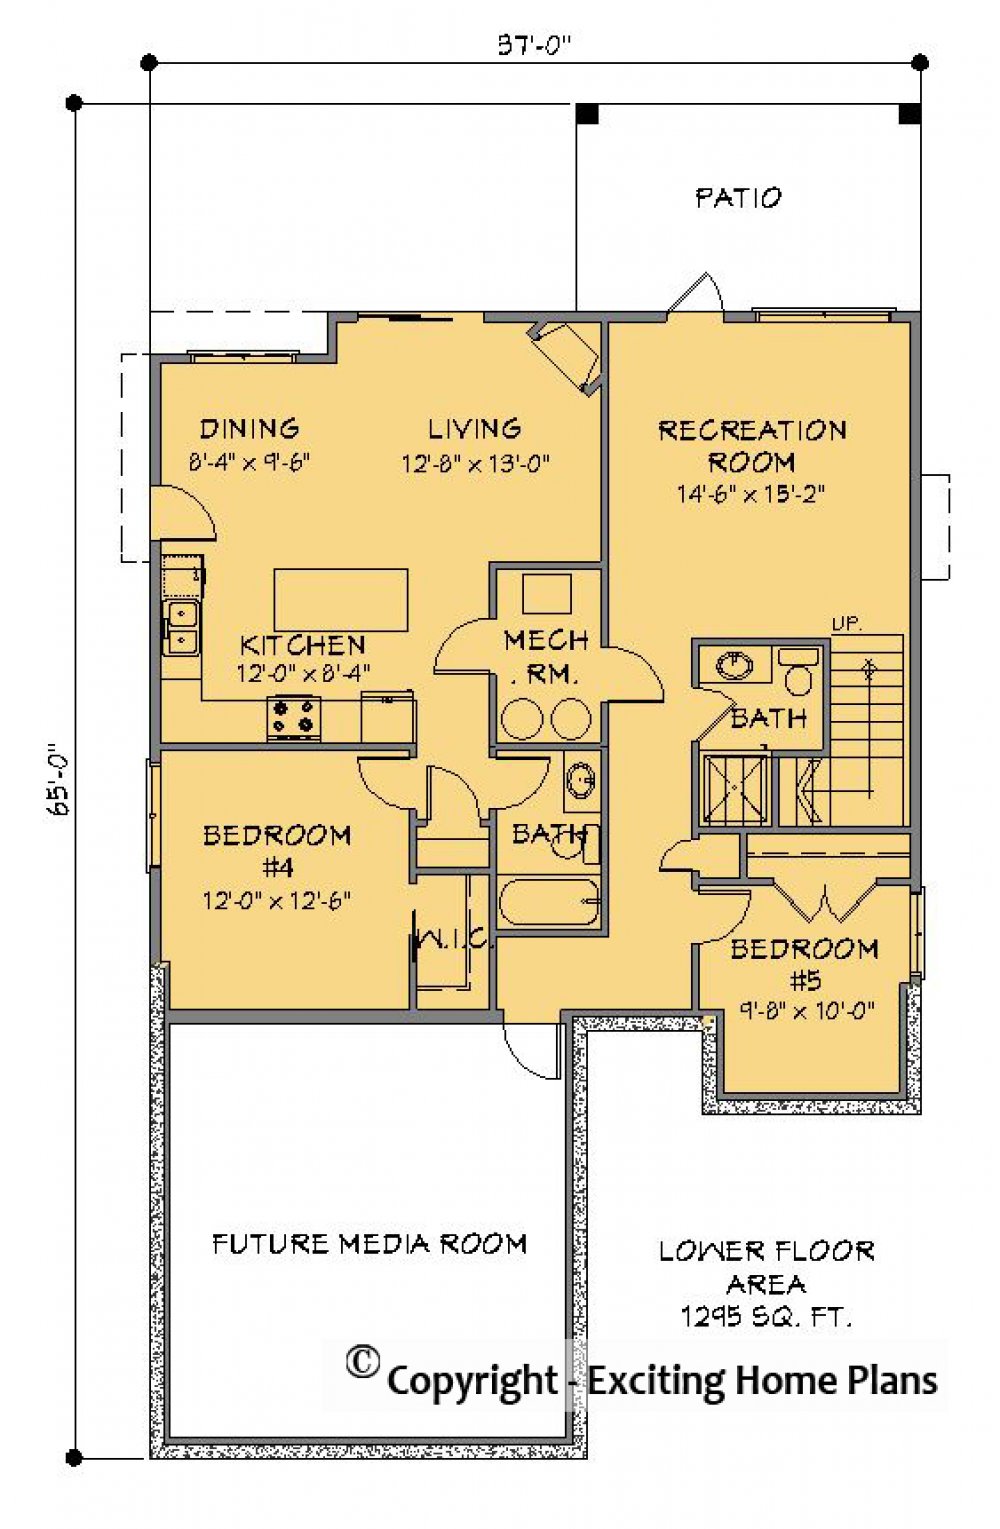 House Plan E1341-10 Lower Floor Plan